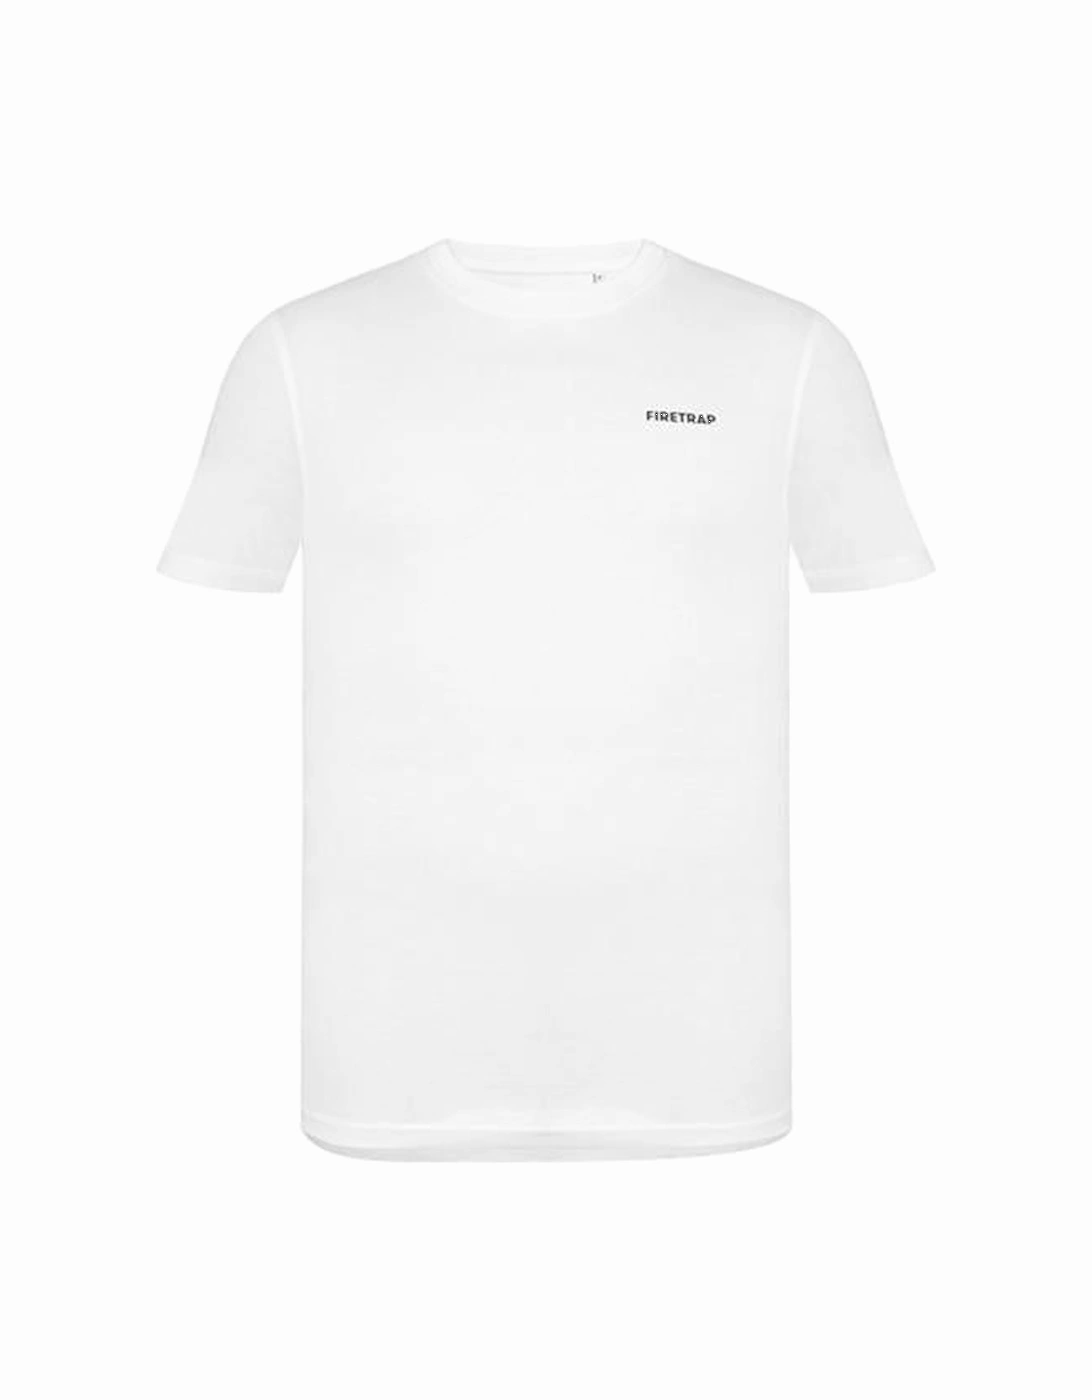 Mens Trek T-Shirt, 2 of 1